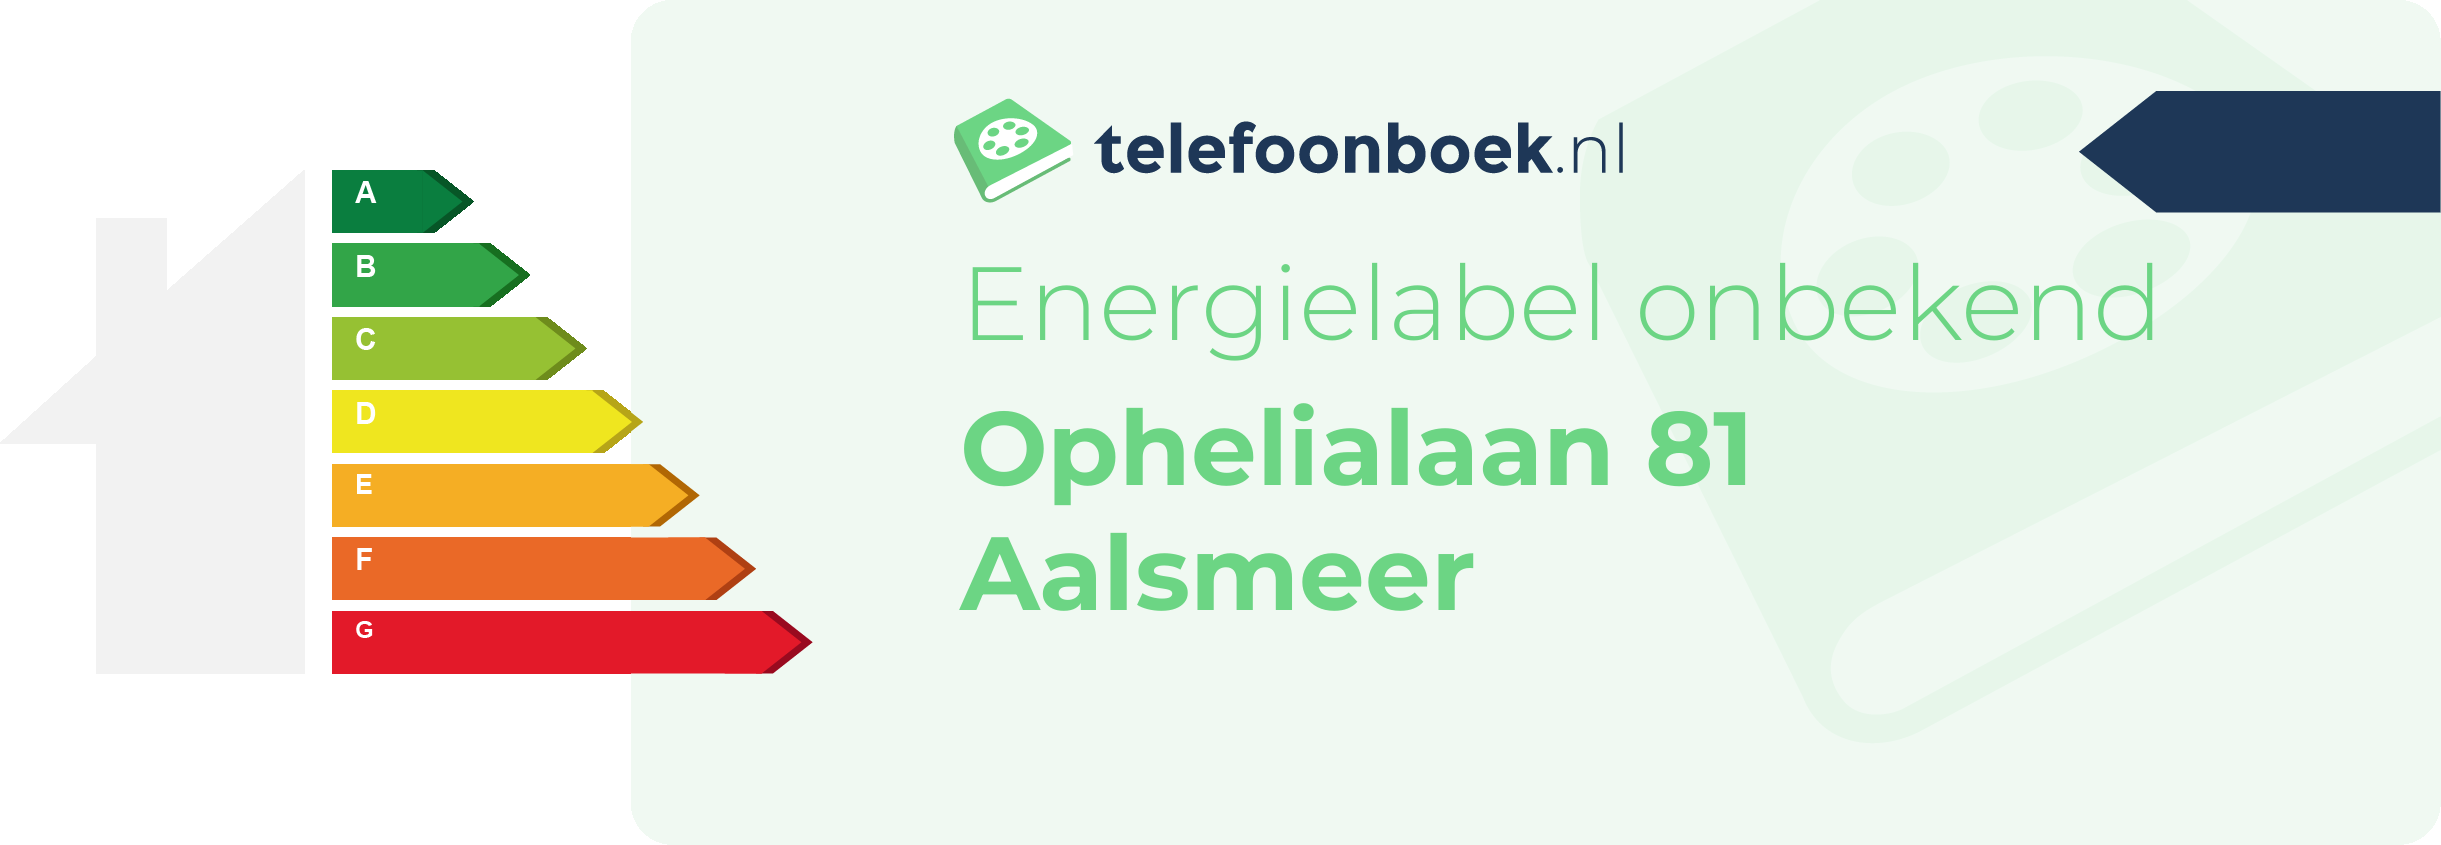 Energielabel Ophelialaan 81 Aalsmeer